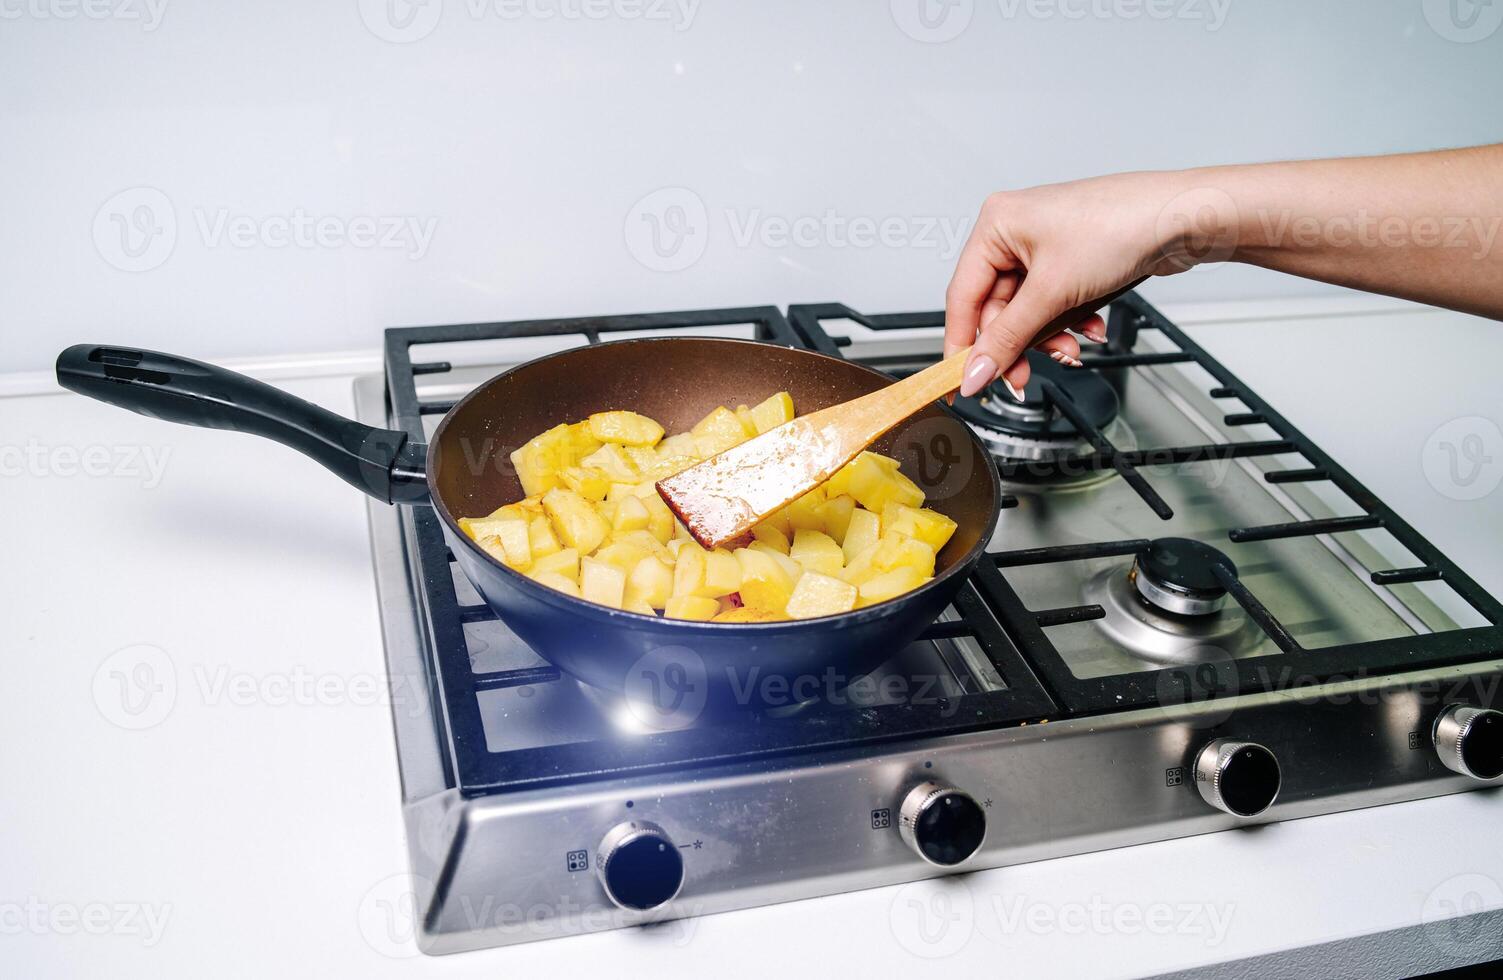 patatas frito en caliente grasa foto